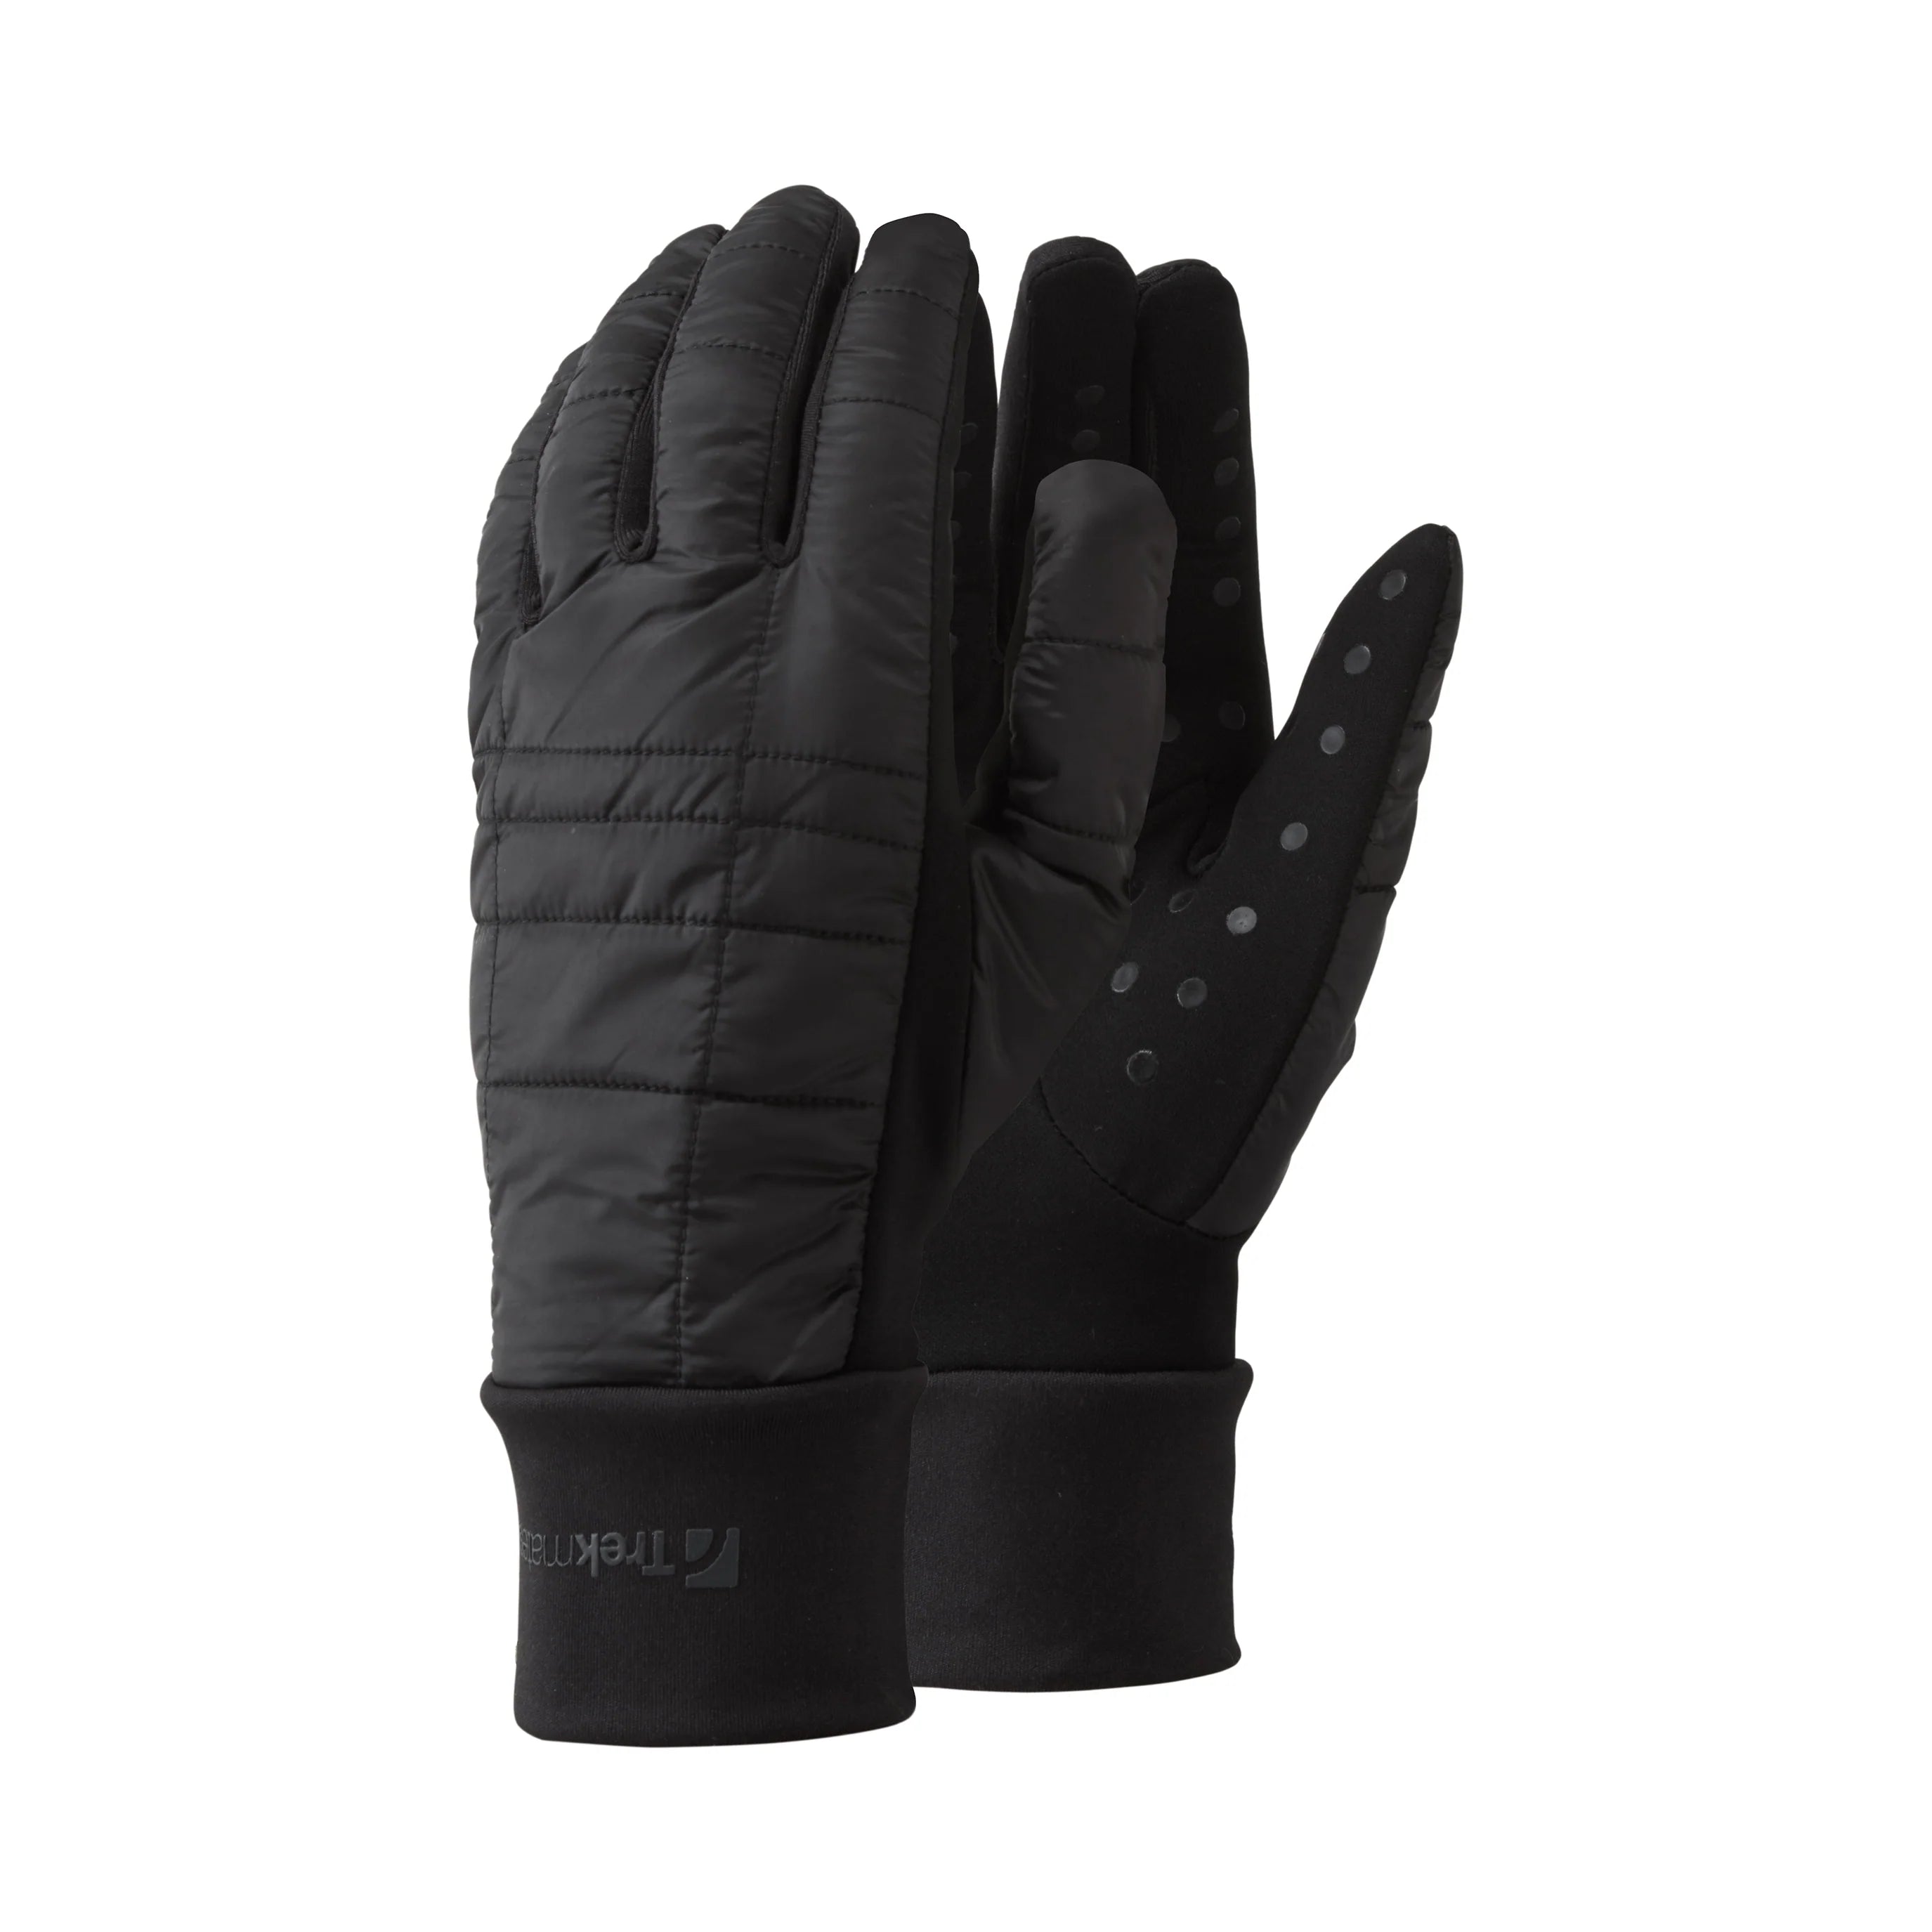 Stretch Grip Hybrid Men's Glove